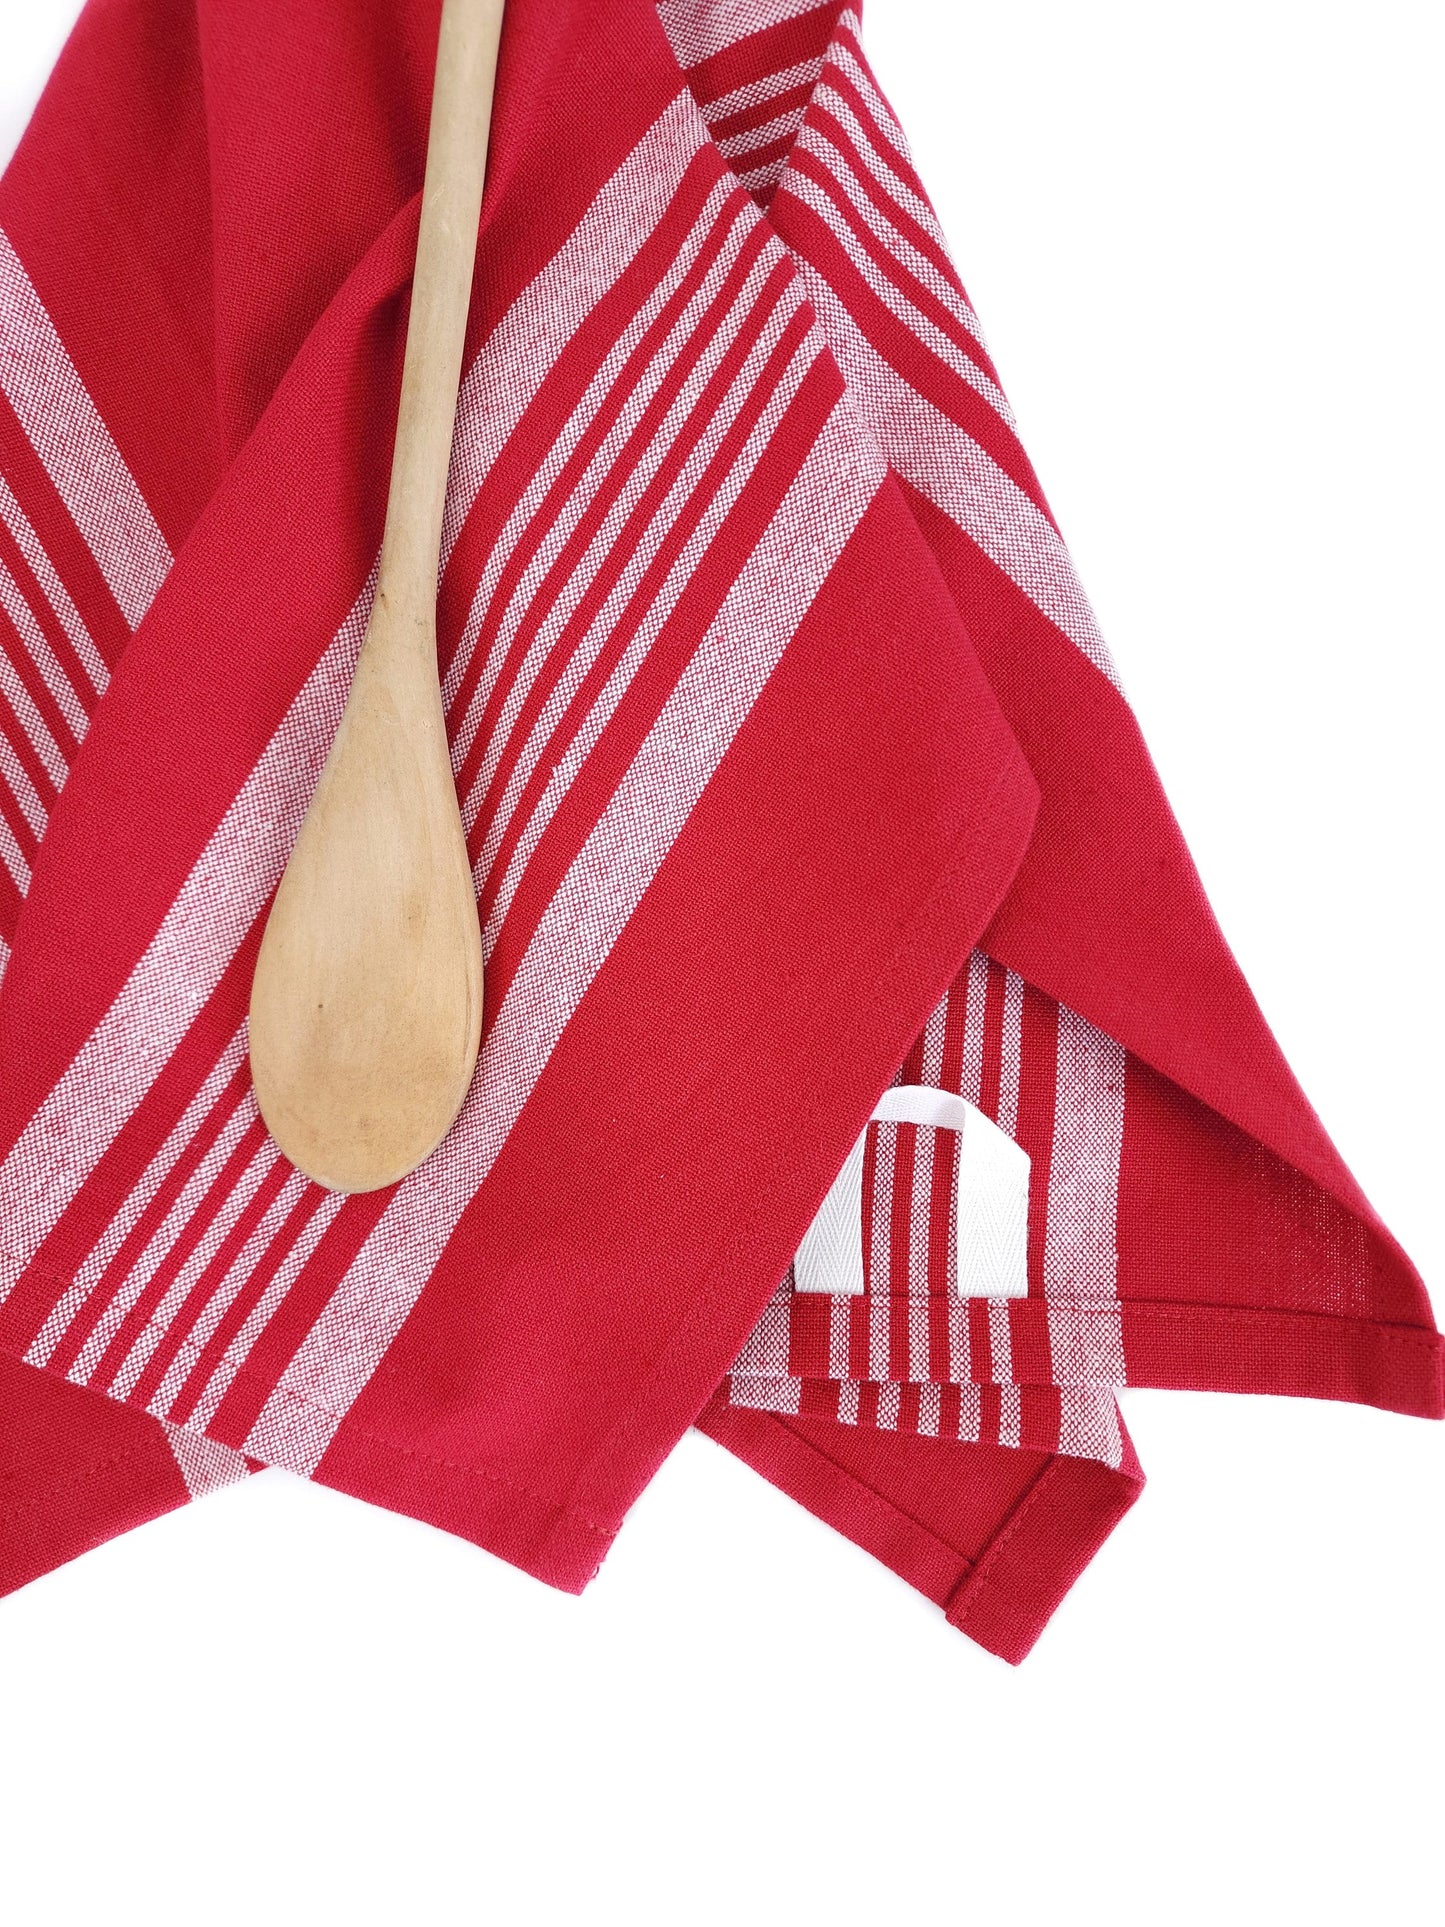 Red Kitchen Towel, Valentine's Day Towel